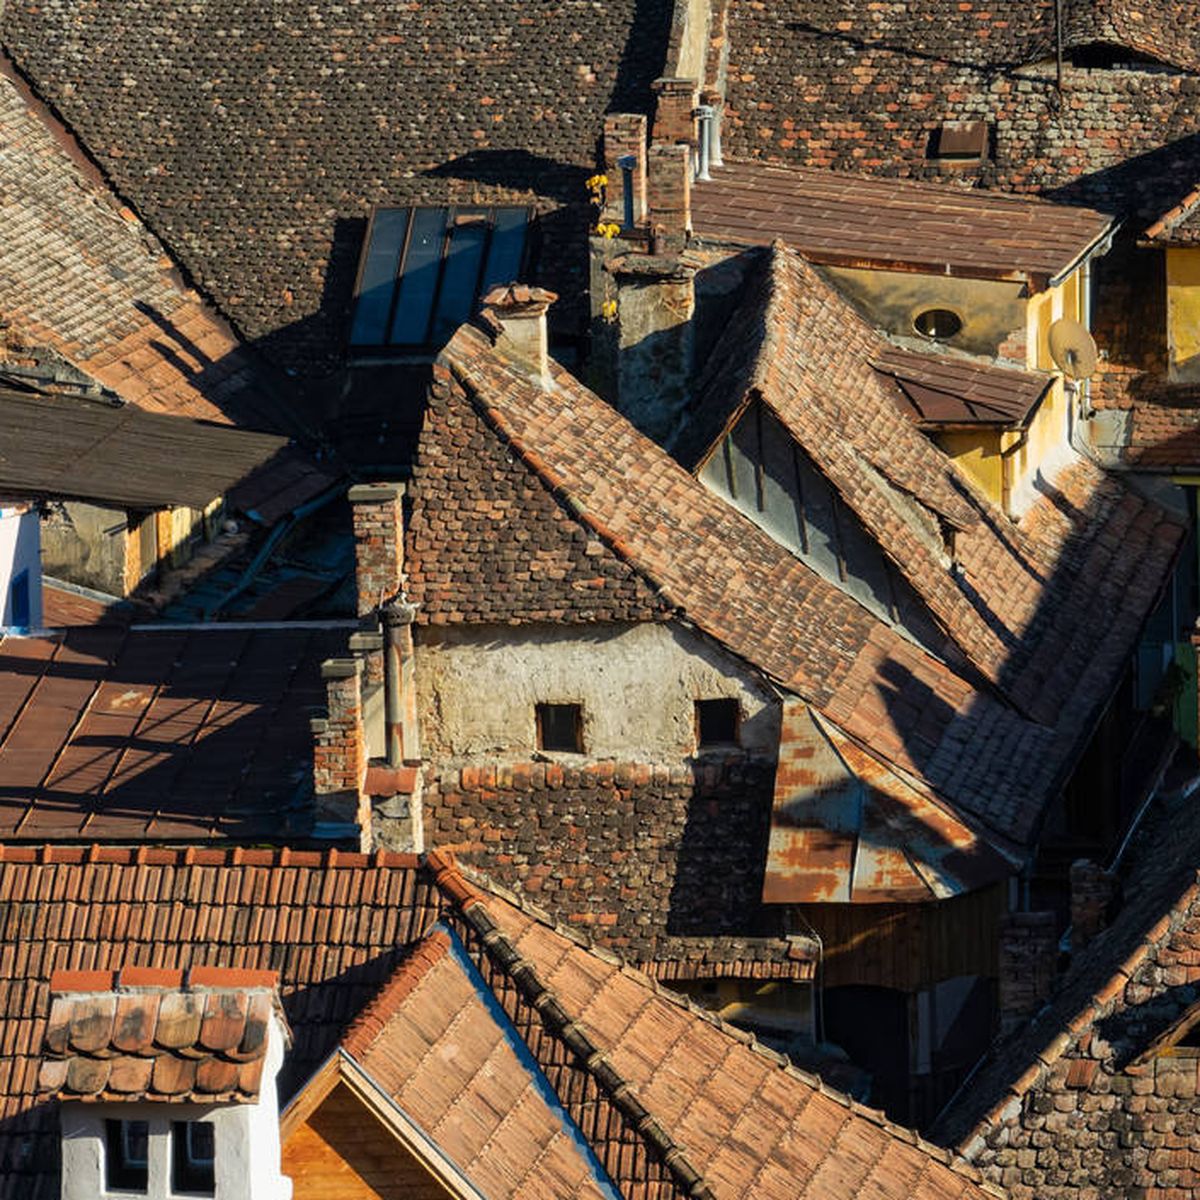 qué Rumanía es el país del mundo con más propietarios de vivienda